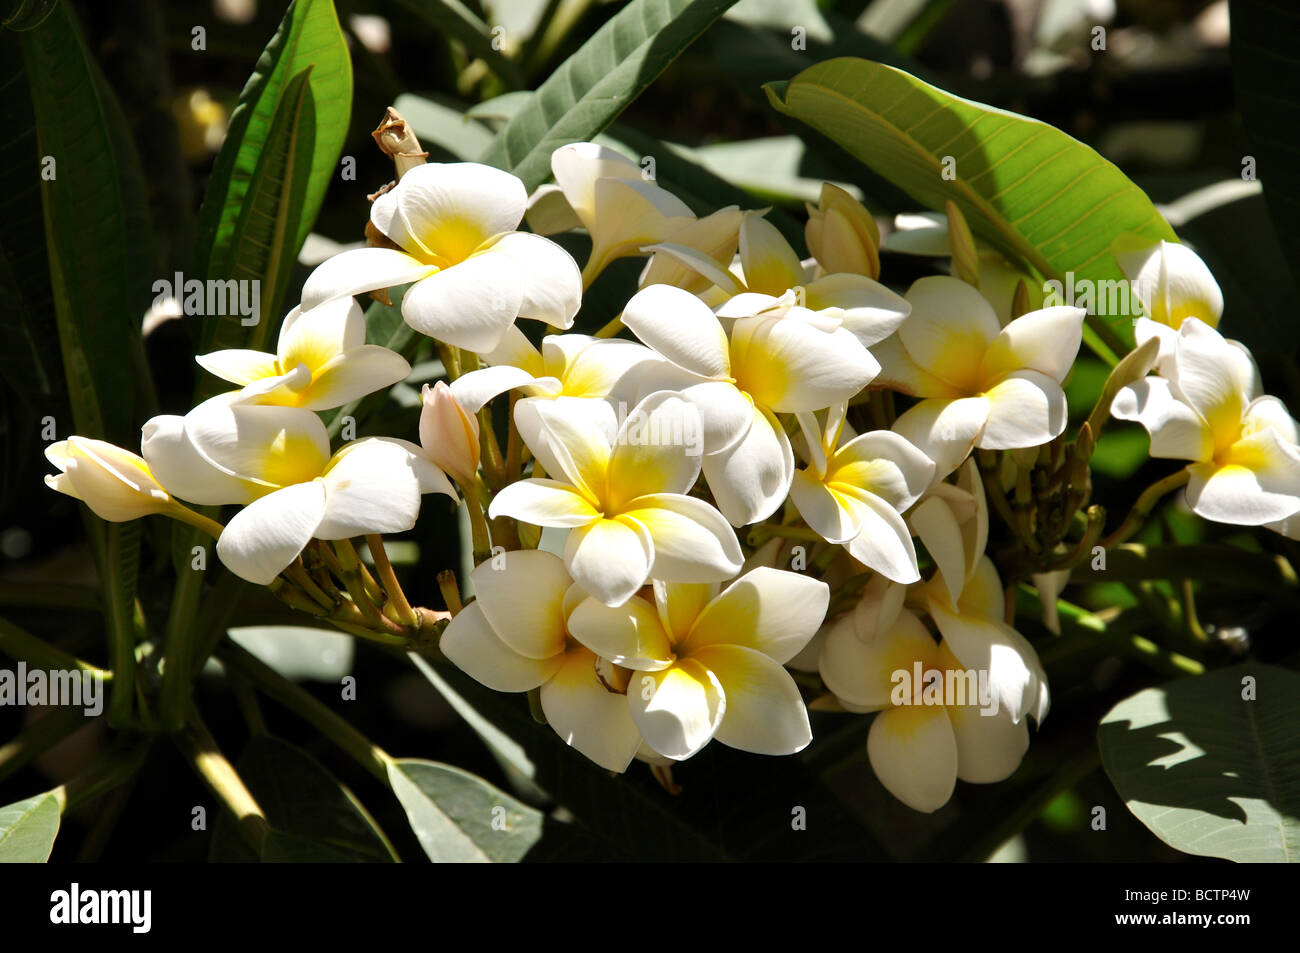 Frangipani flowers, Malaga, Costa del Sol, Malaga Province, Andalusia, Spain Stock Photo